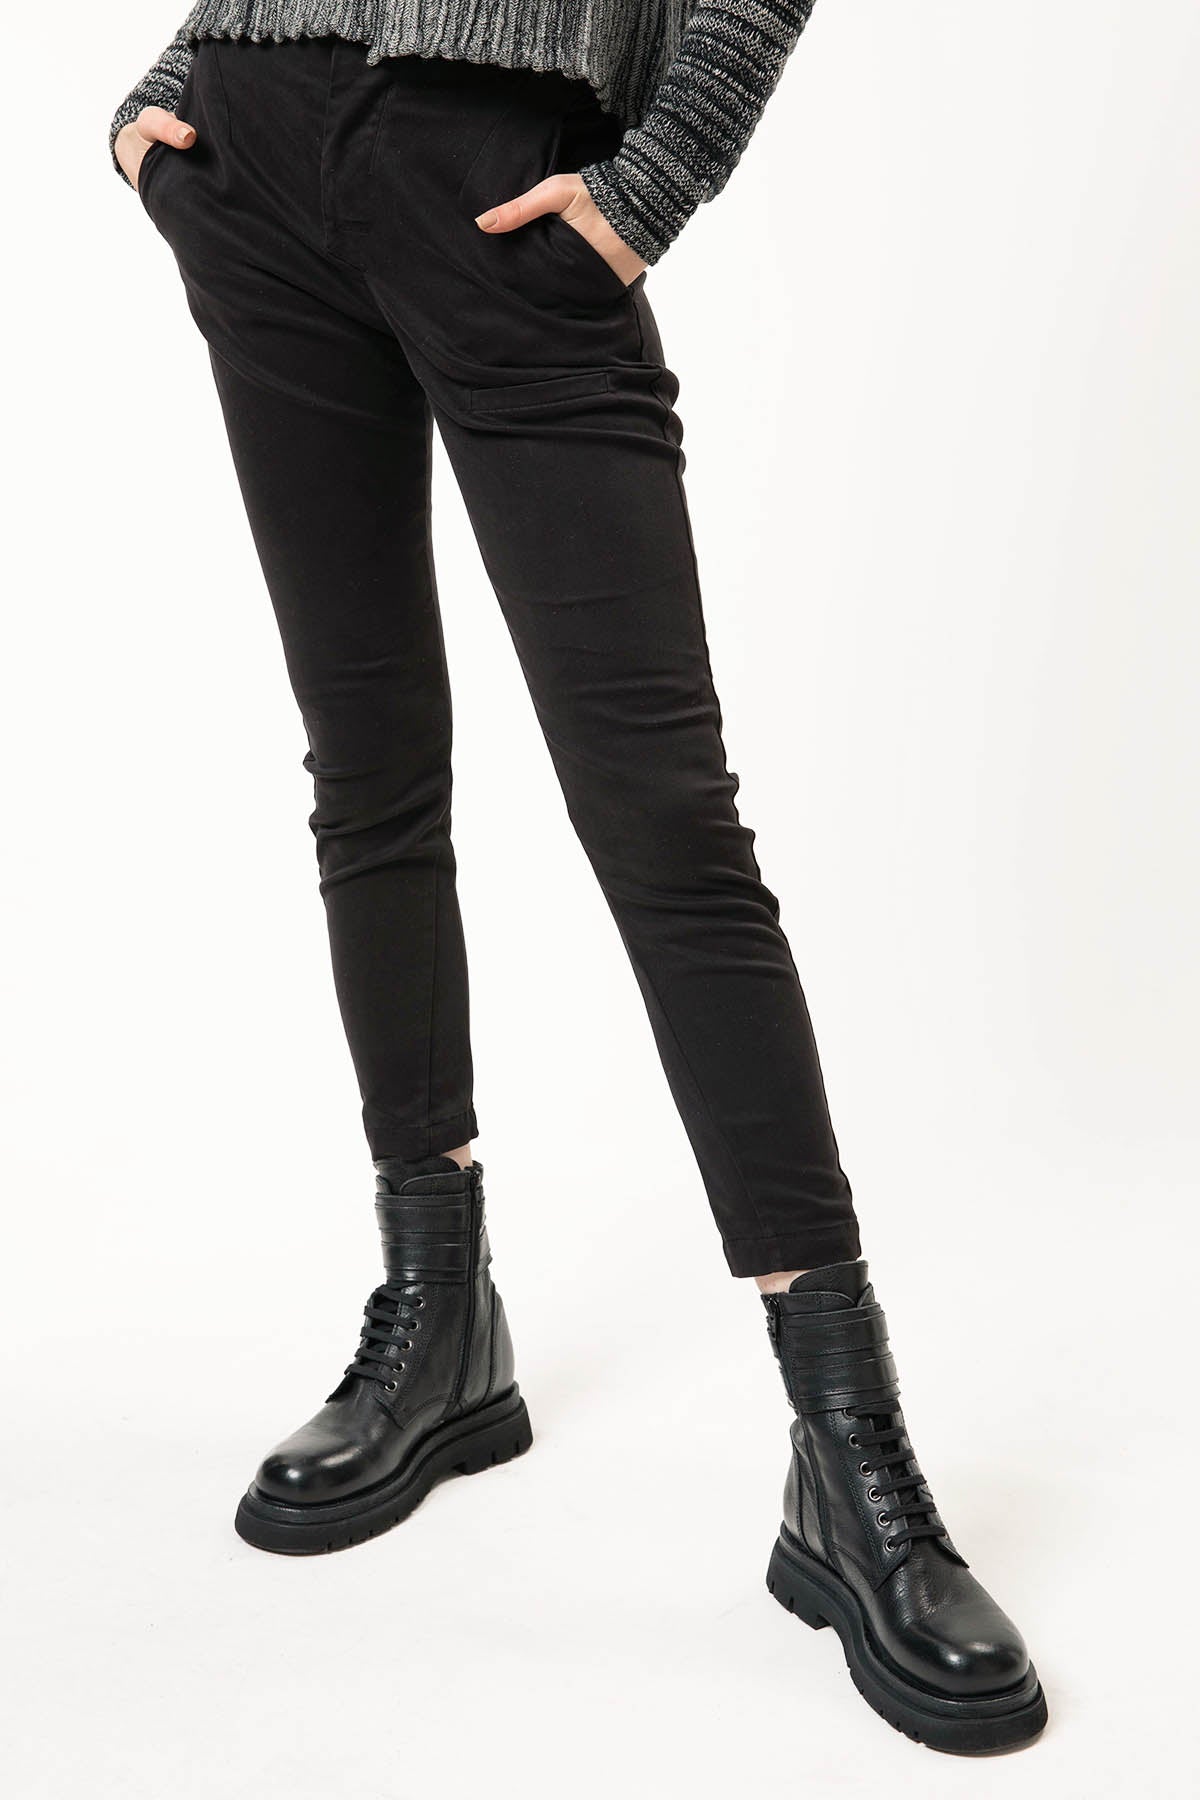 Transit Skinny Fit Pantolon-Libas Trendy Fashion Store